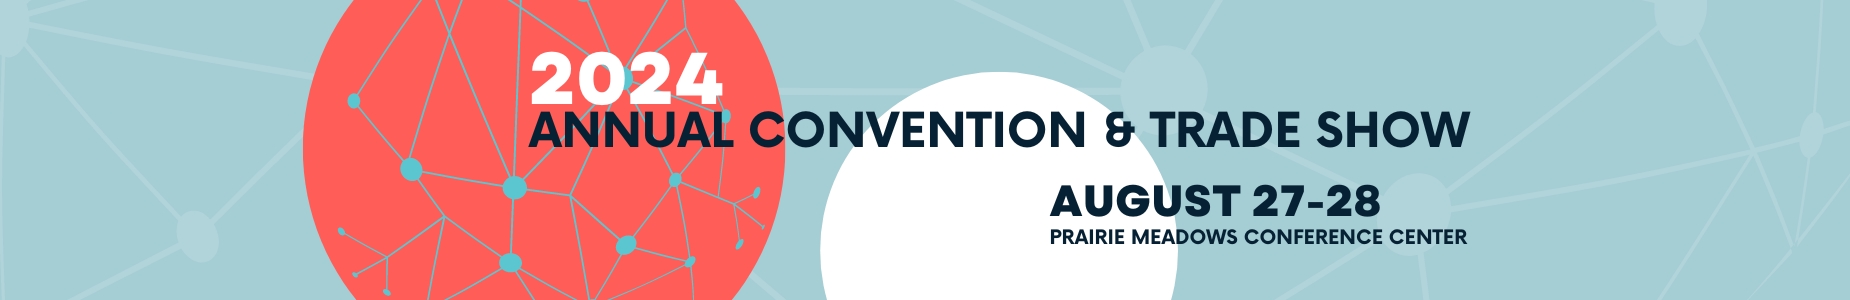 convention - website banner.jpg